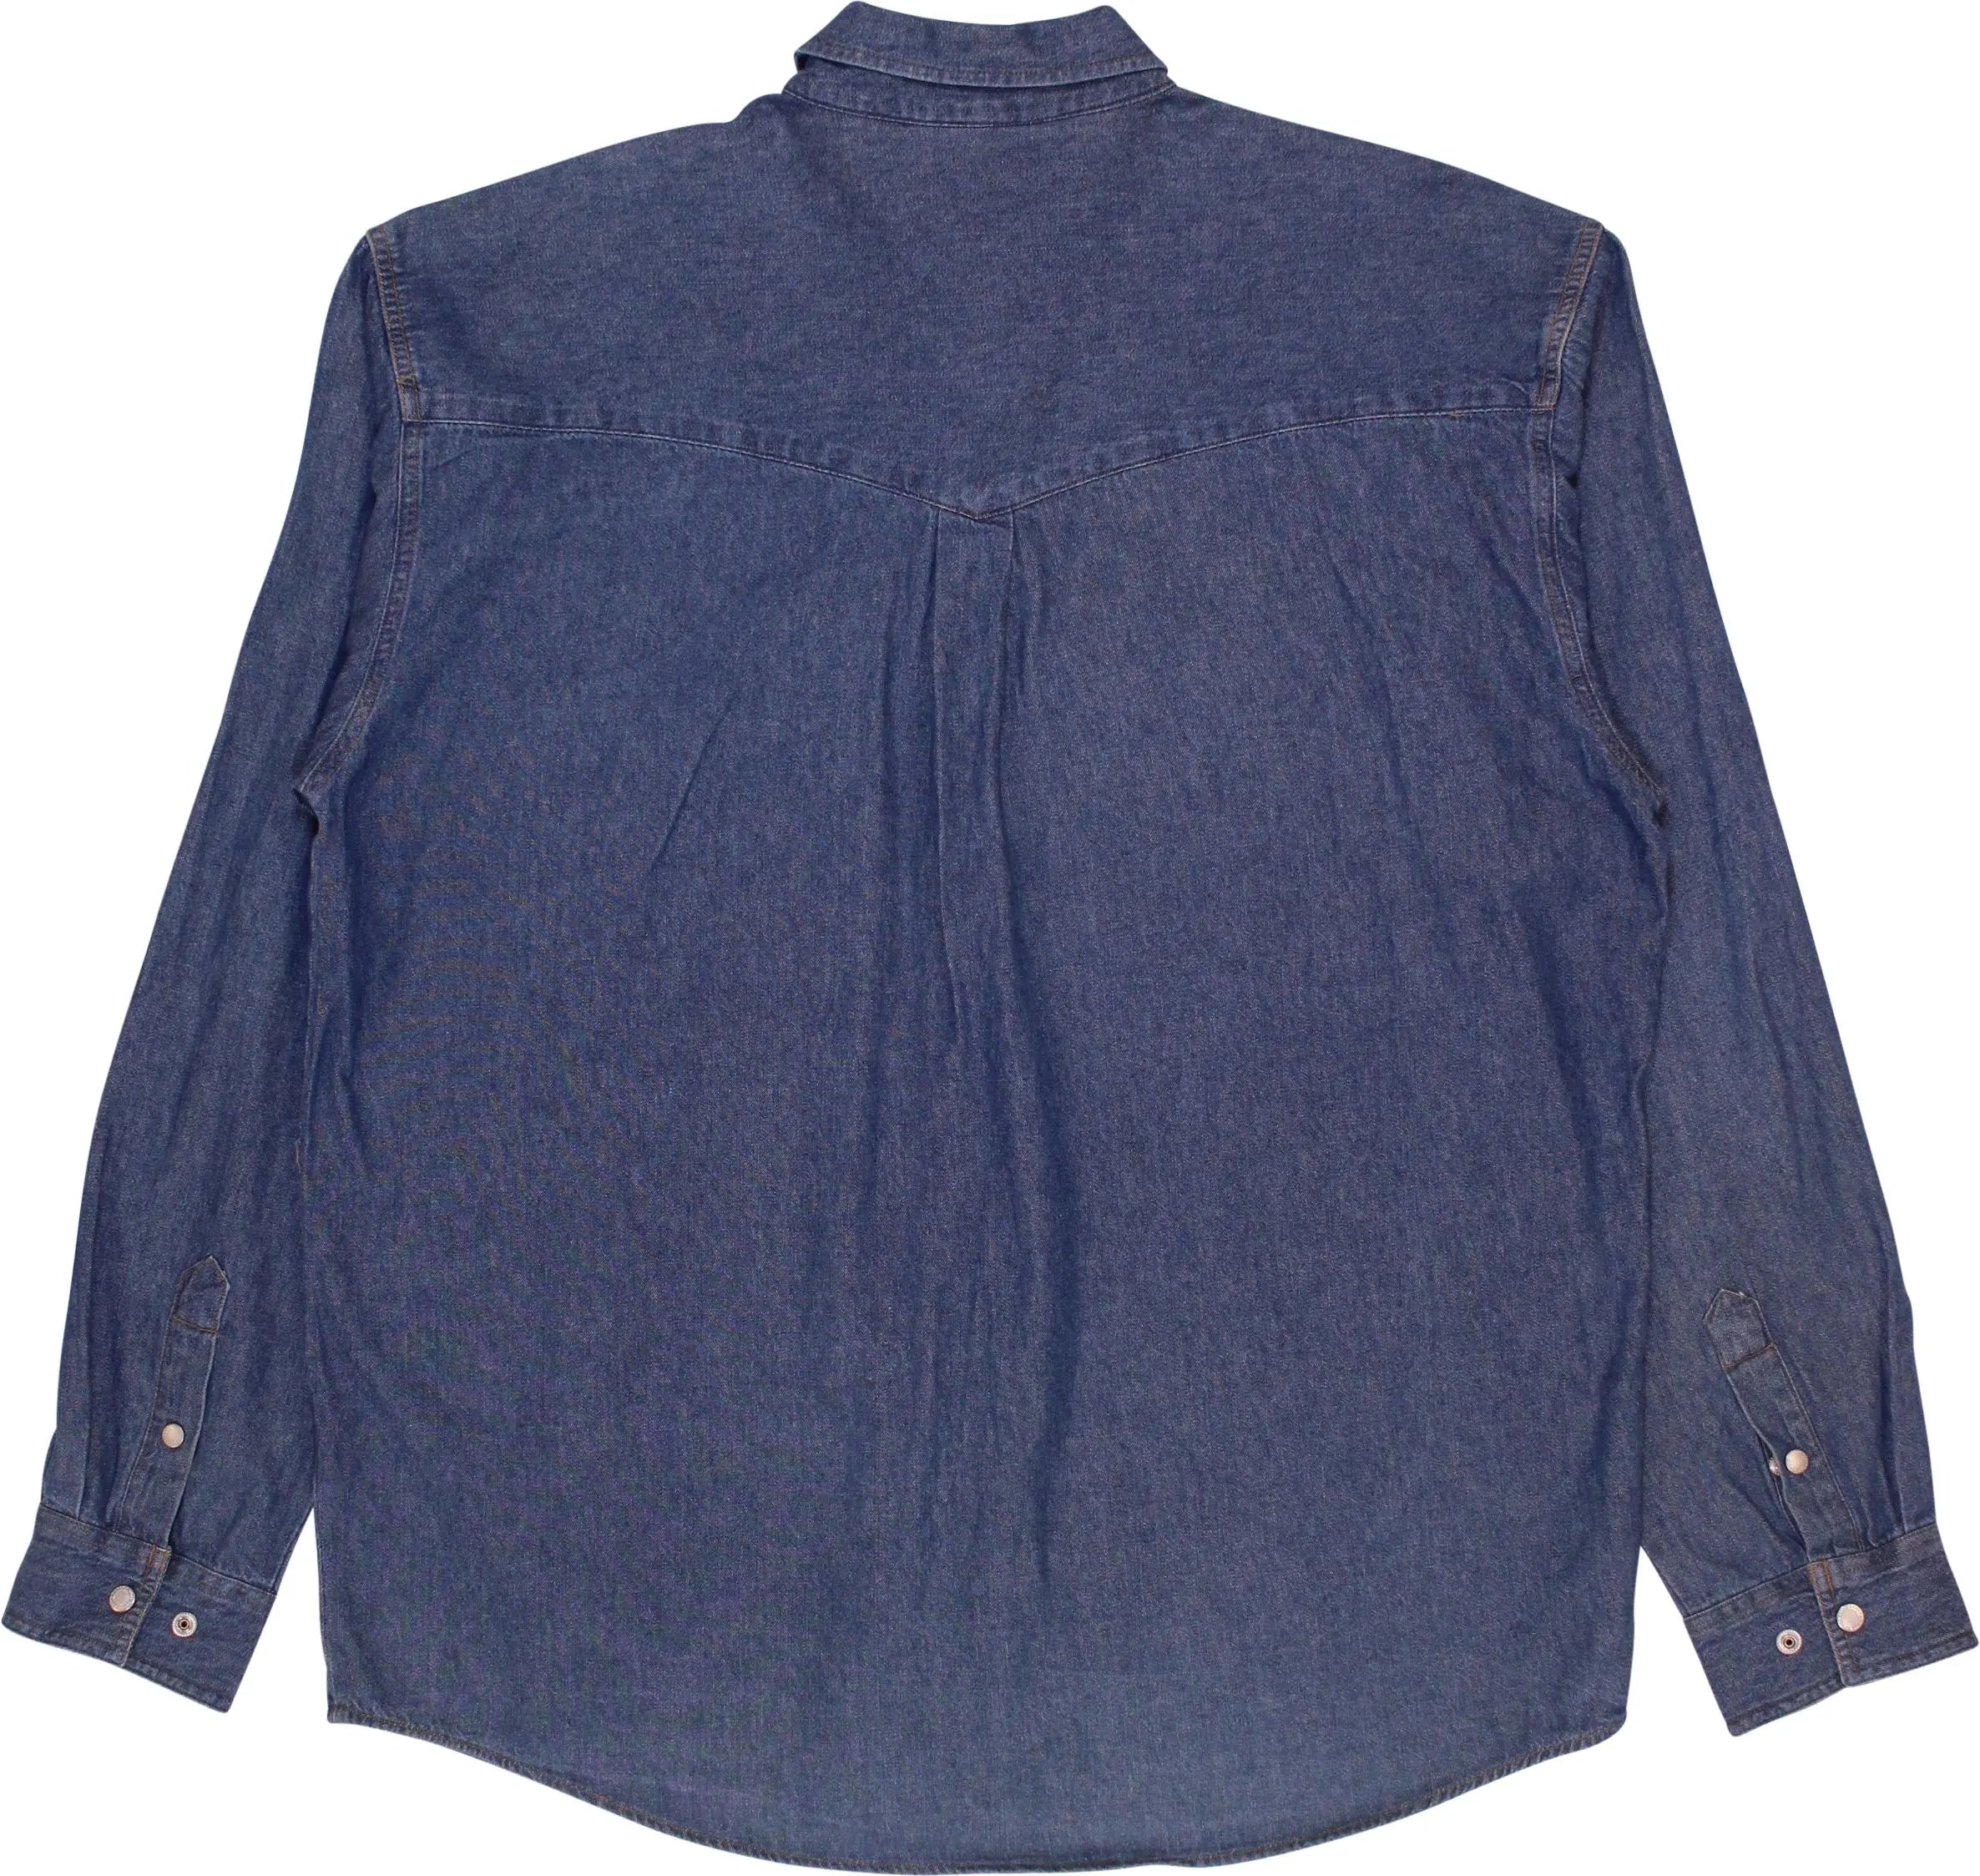 John Baner - Denim Shirt- ThriftTale.com - Vintage and second handclothing